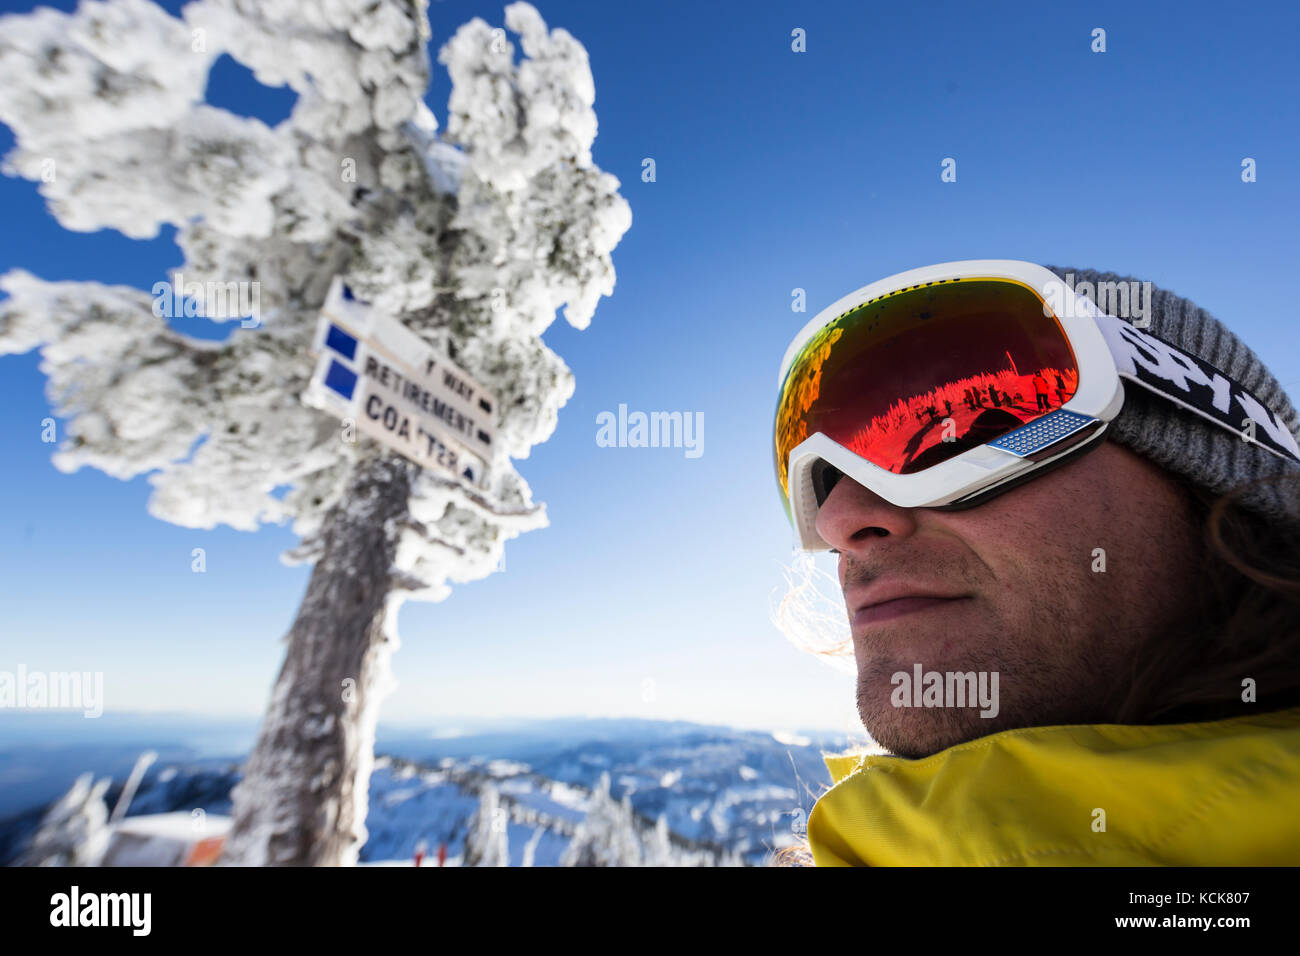 Des réflexions dans les lunettes d'un snowboarder confirment une journée de ski « oiseau bleu » claire au Mont Washington, la vallée de Comox, île de Vancouver, Colombie-Britannique, Canada Banque D'Images